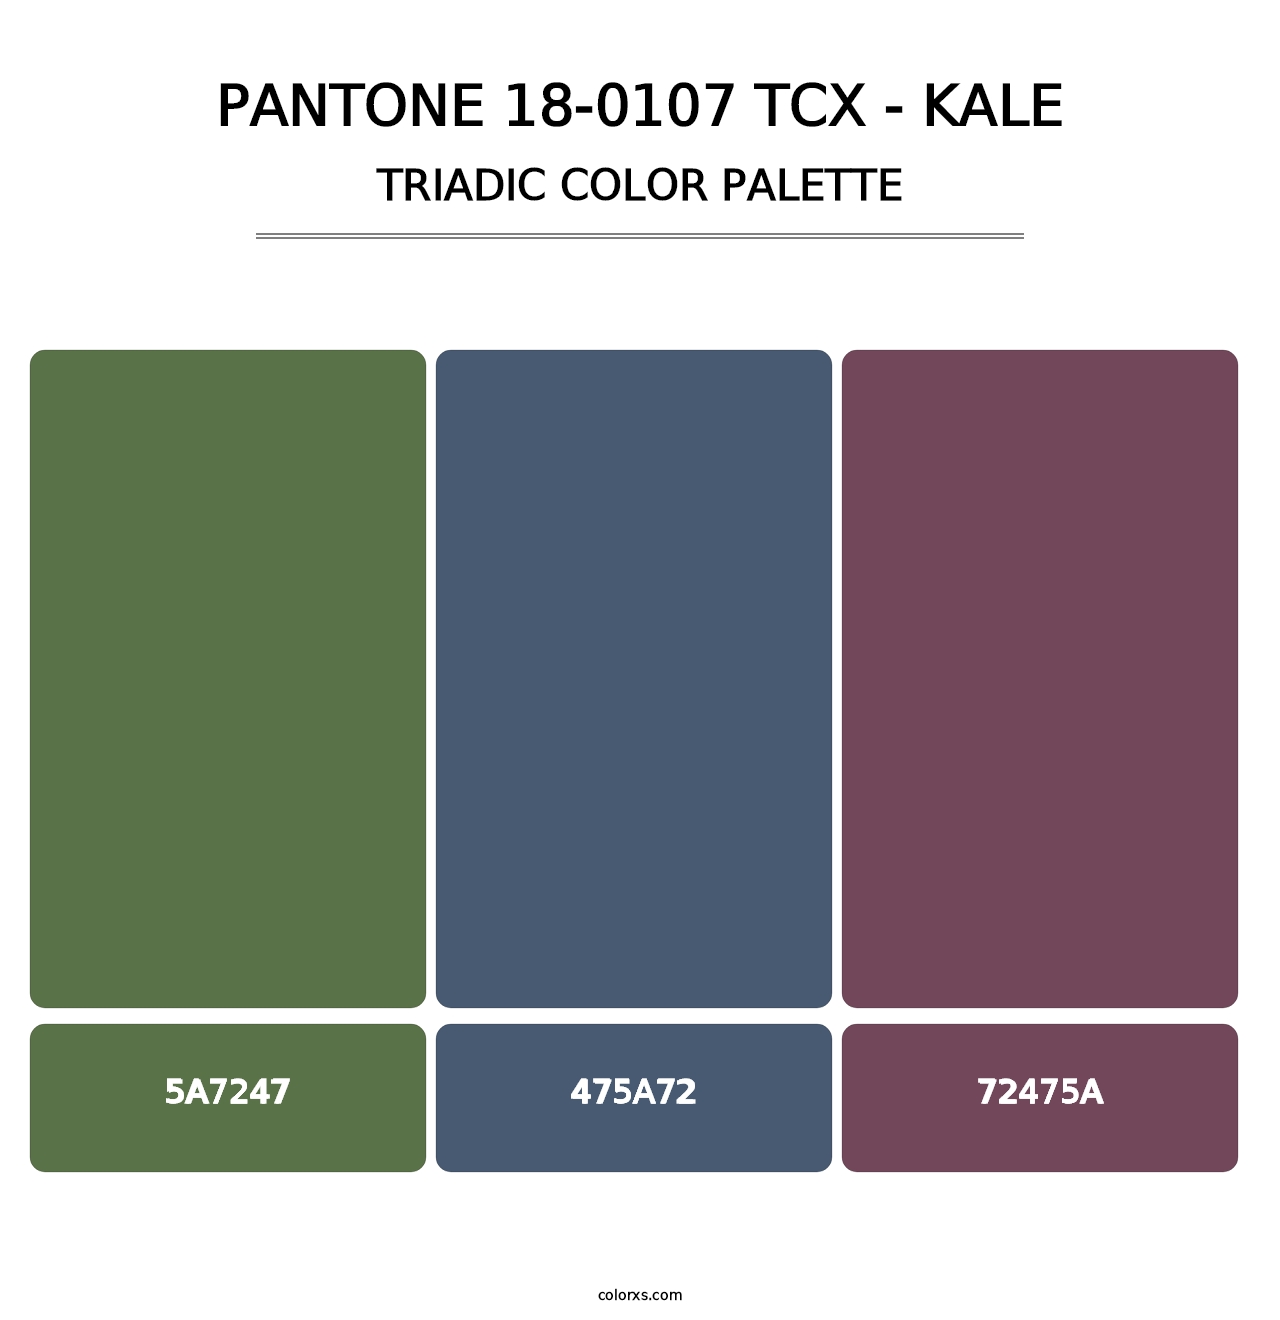 PANTONE 18-0107 TCX - Kale - Triadic Color Palette